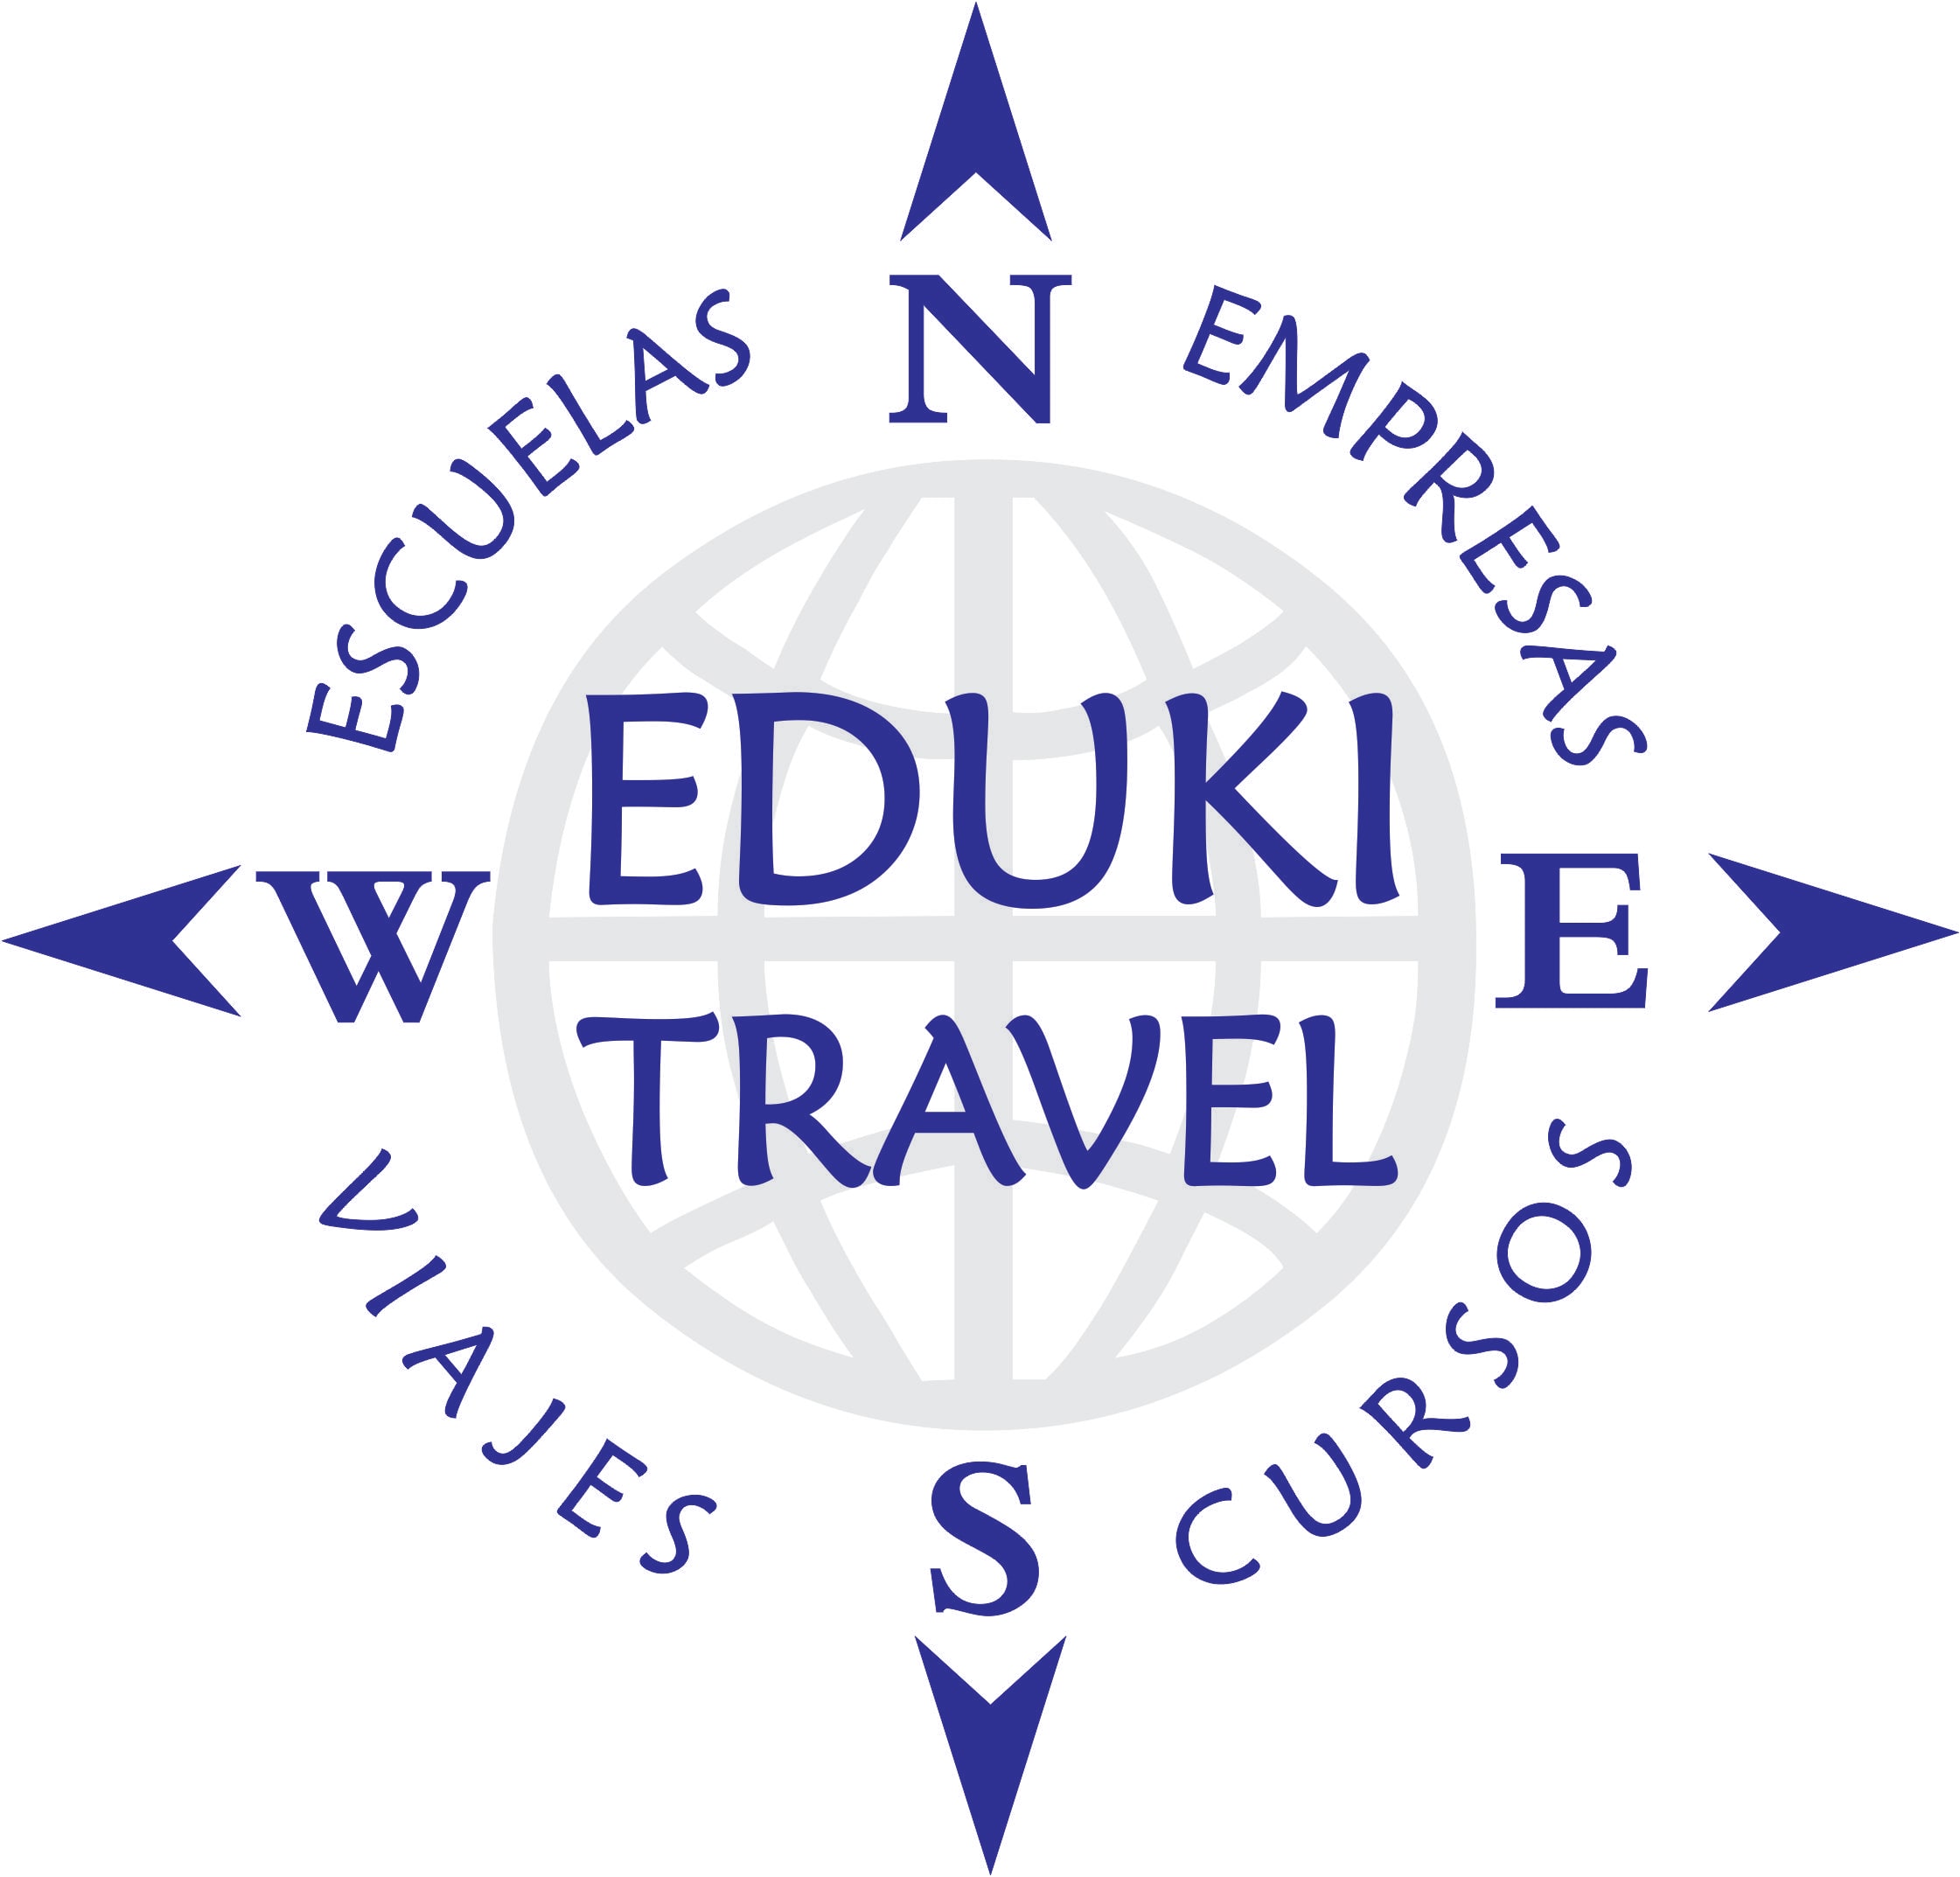 Eduki Travel